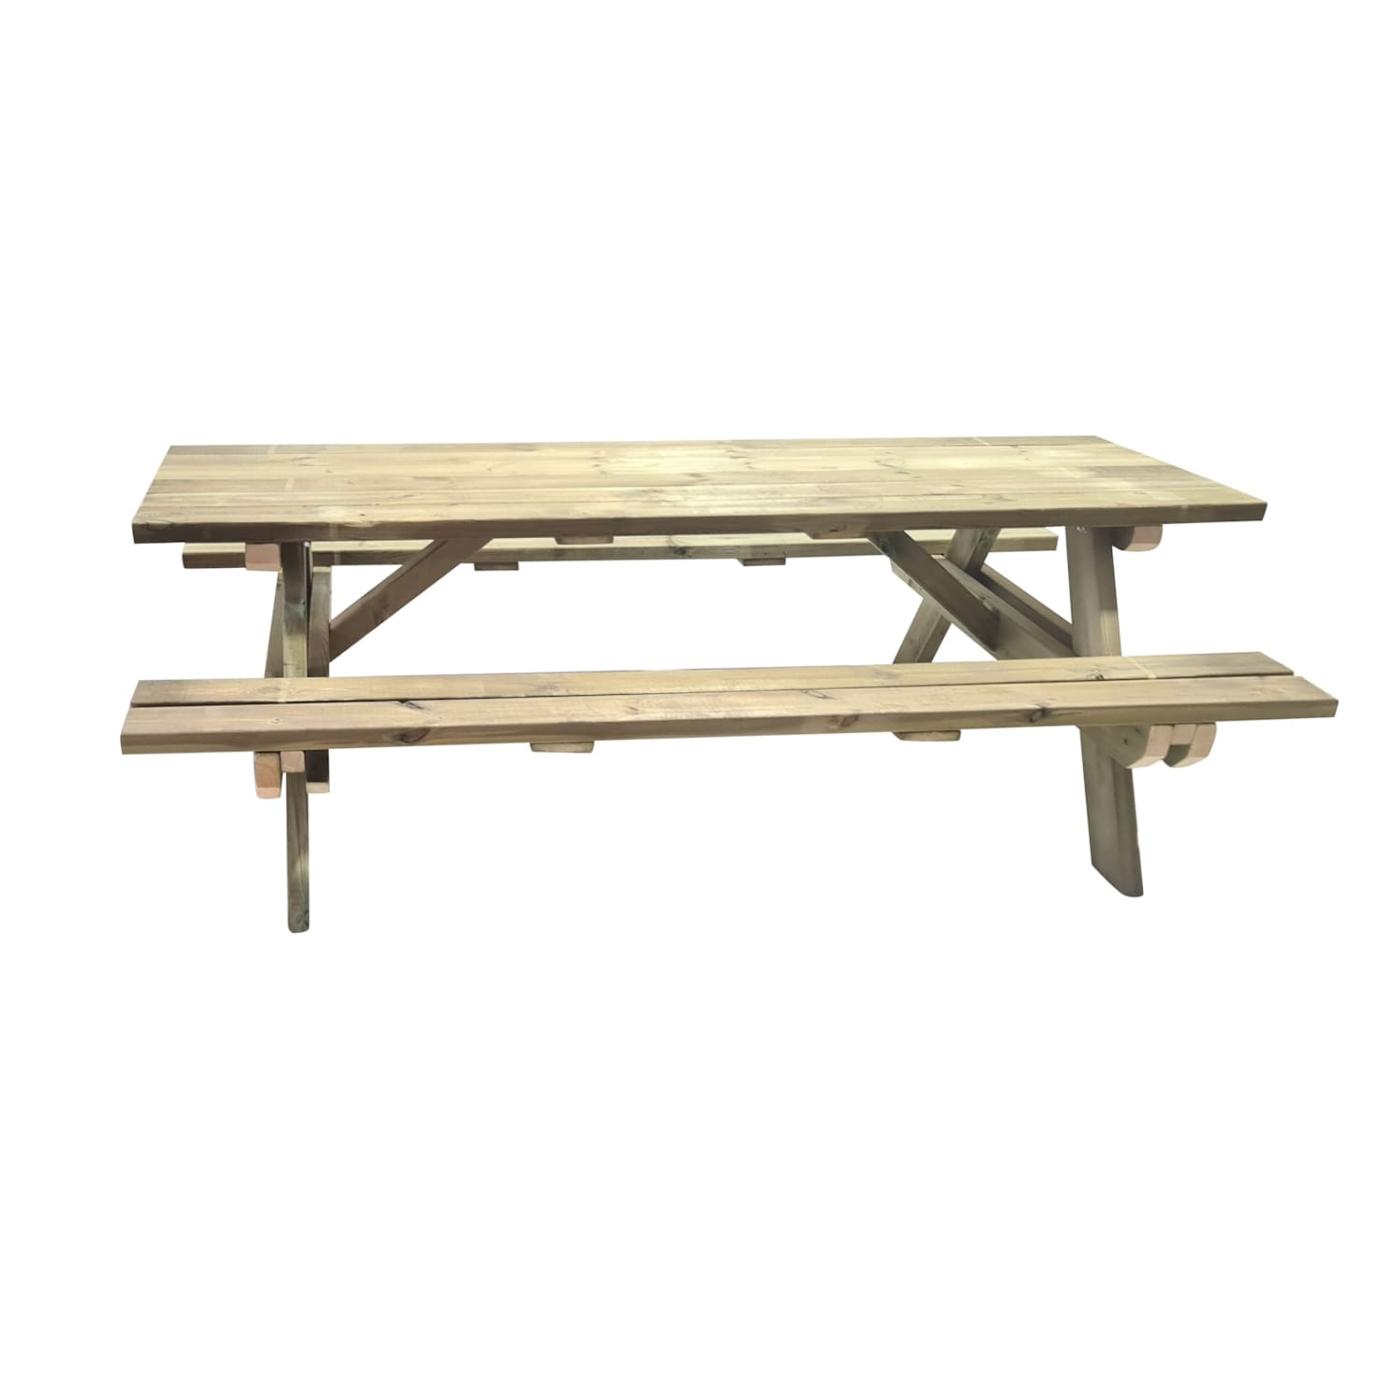 Taula de picnic de fusta MASGAMES MUNIC 240 XL